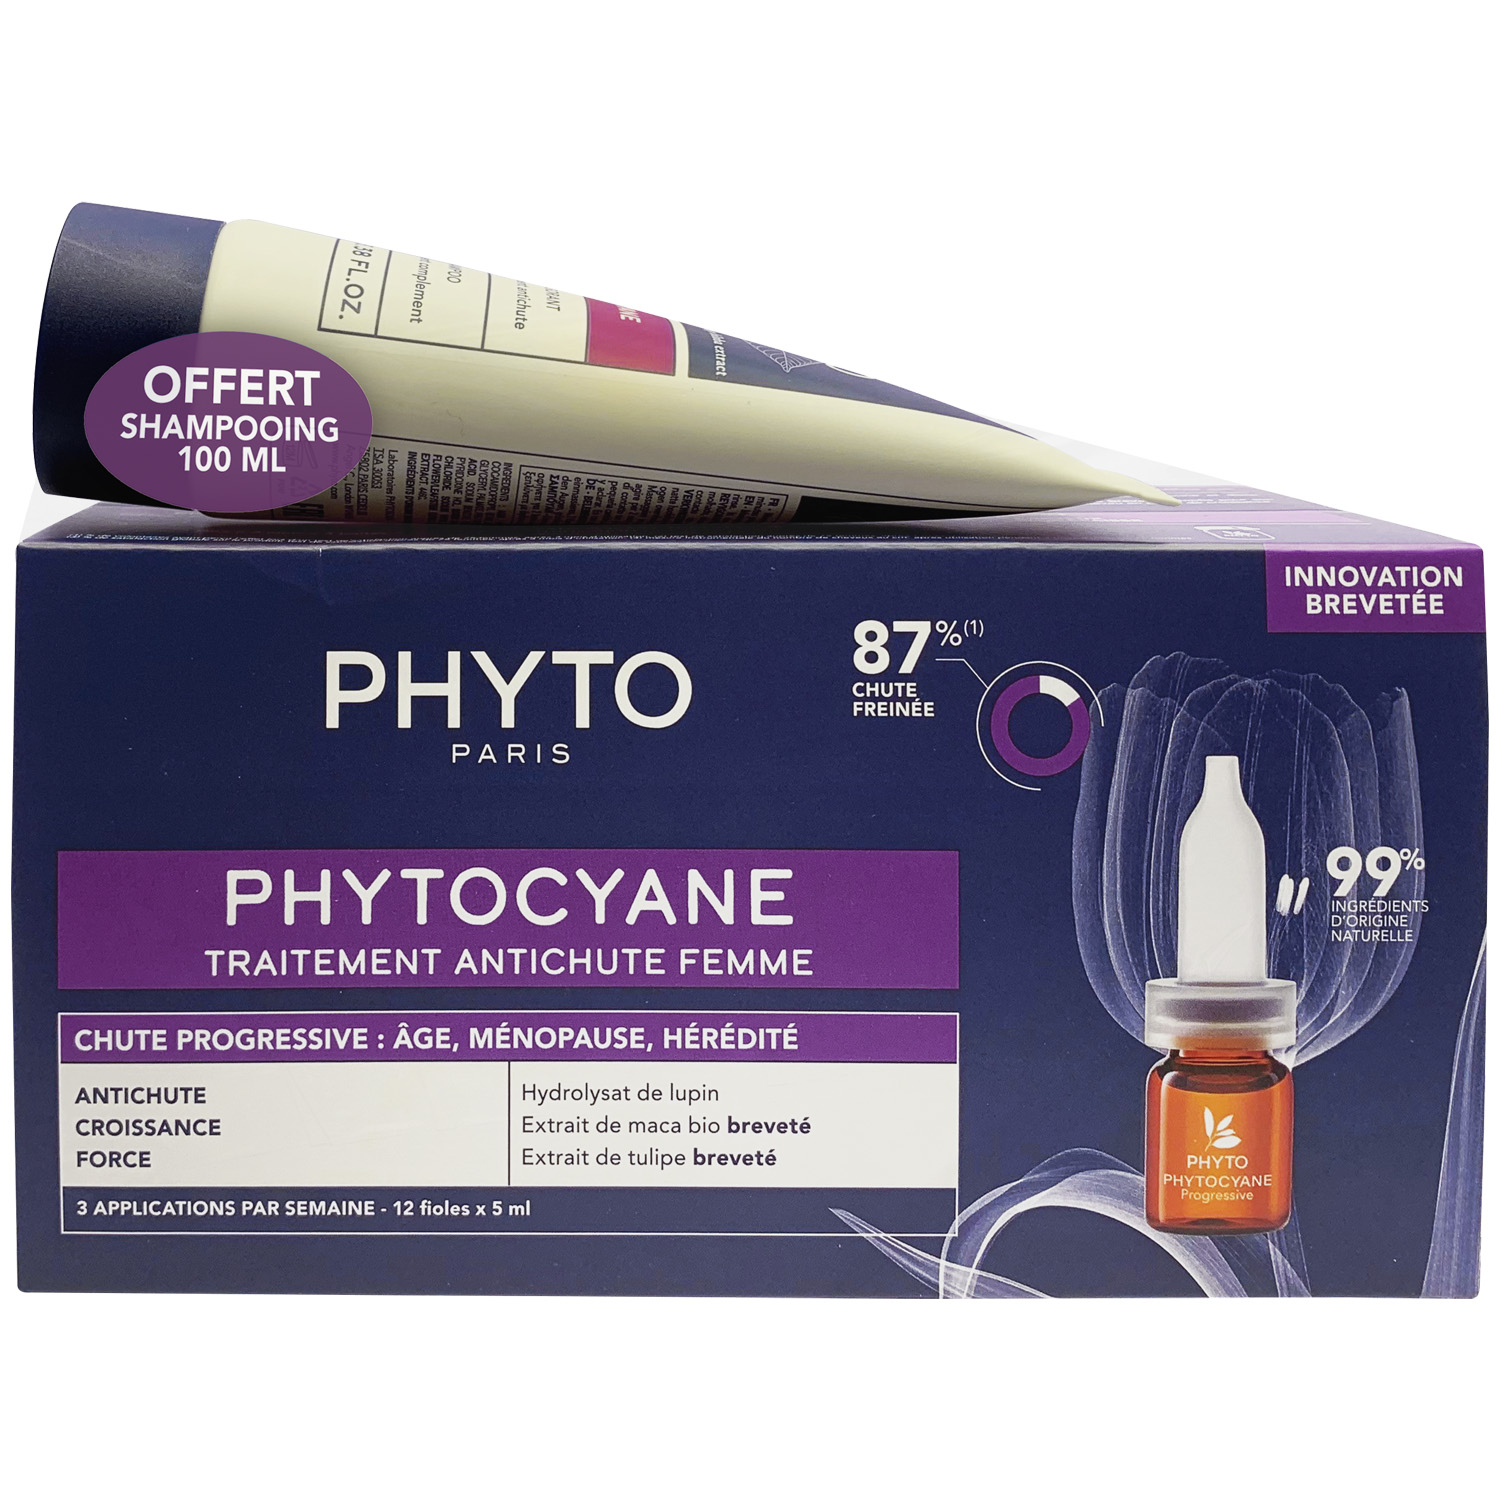 Phyto Набор для женщин: сыворотка от выпадения волос 12х 5мл + укрепляющий шампунь 100 мл (Phyto, Phytocyane) phyto фитоциан сыворотка против выпадения волос для женщин 12 флаконов по 5 мл